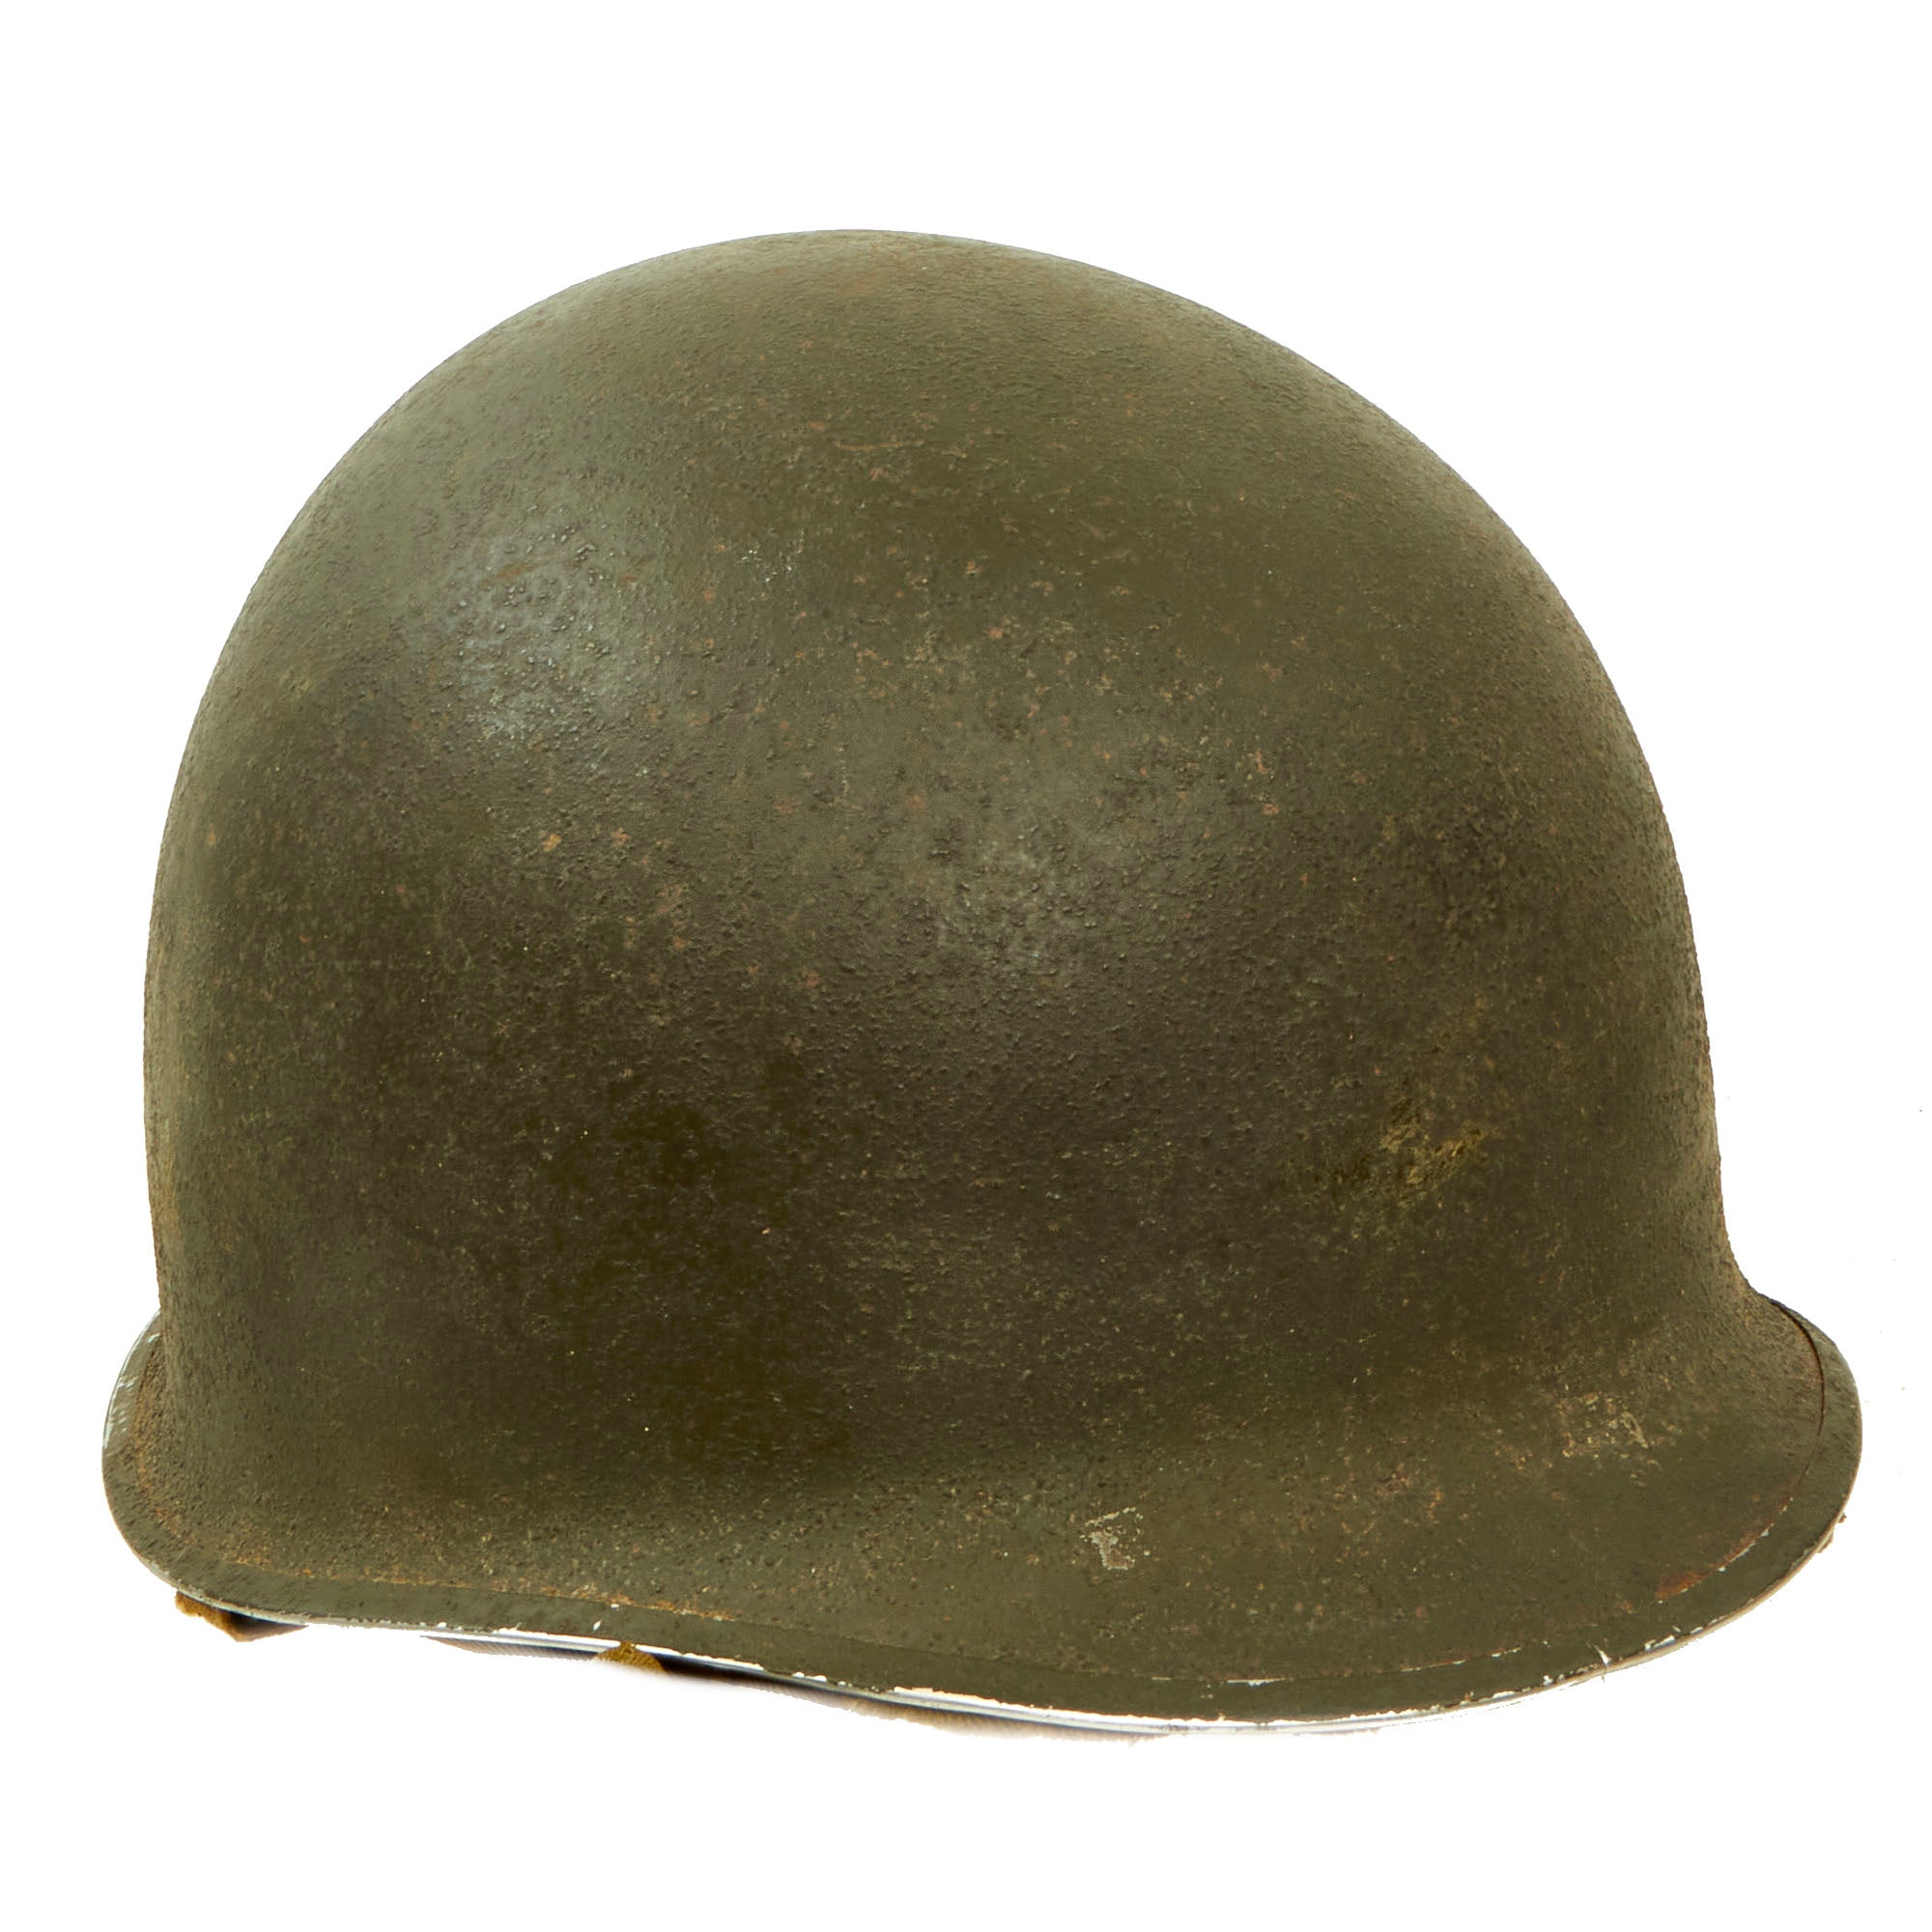 外帽内帽の揃った完全品ですWW2アメリカ軍M1ヘルメット Fixed Bale Front Seam　実物